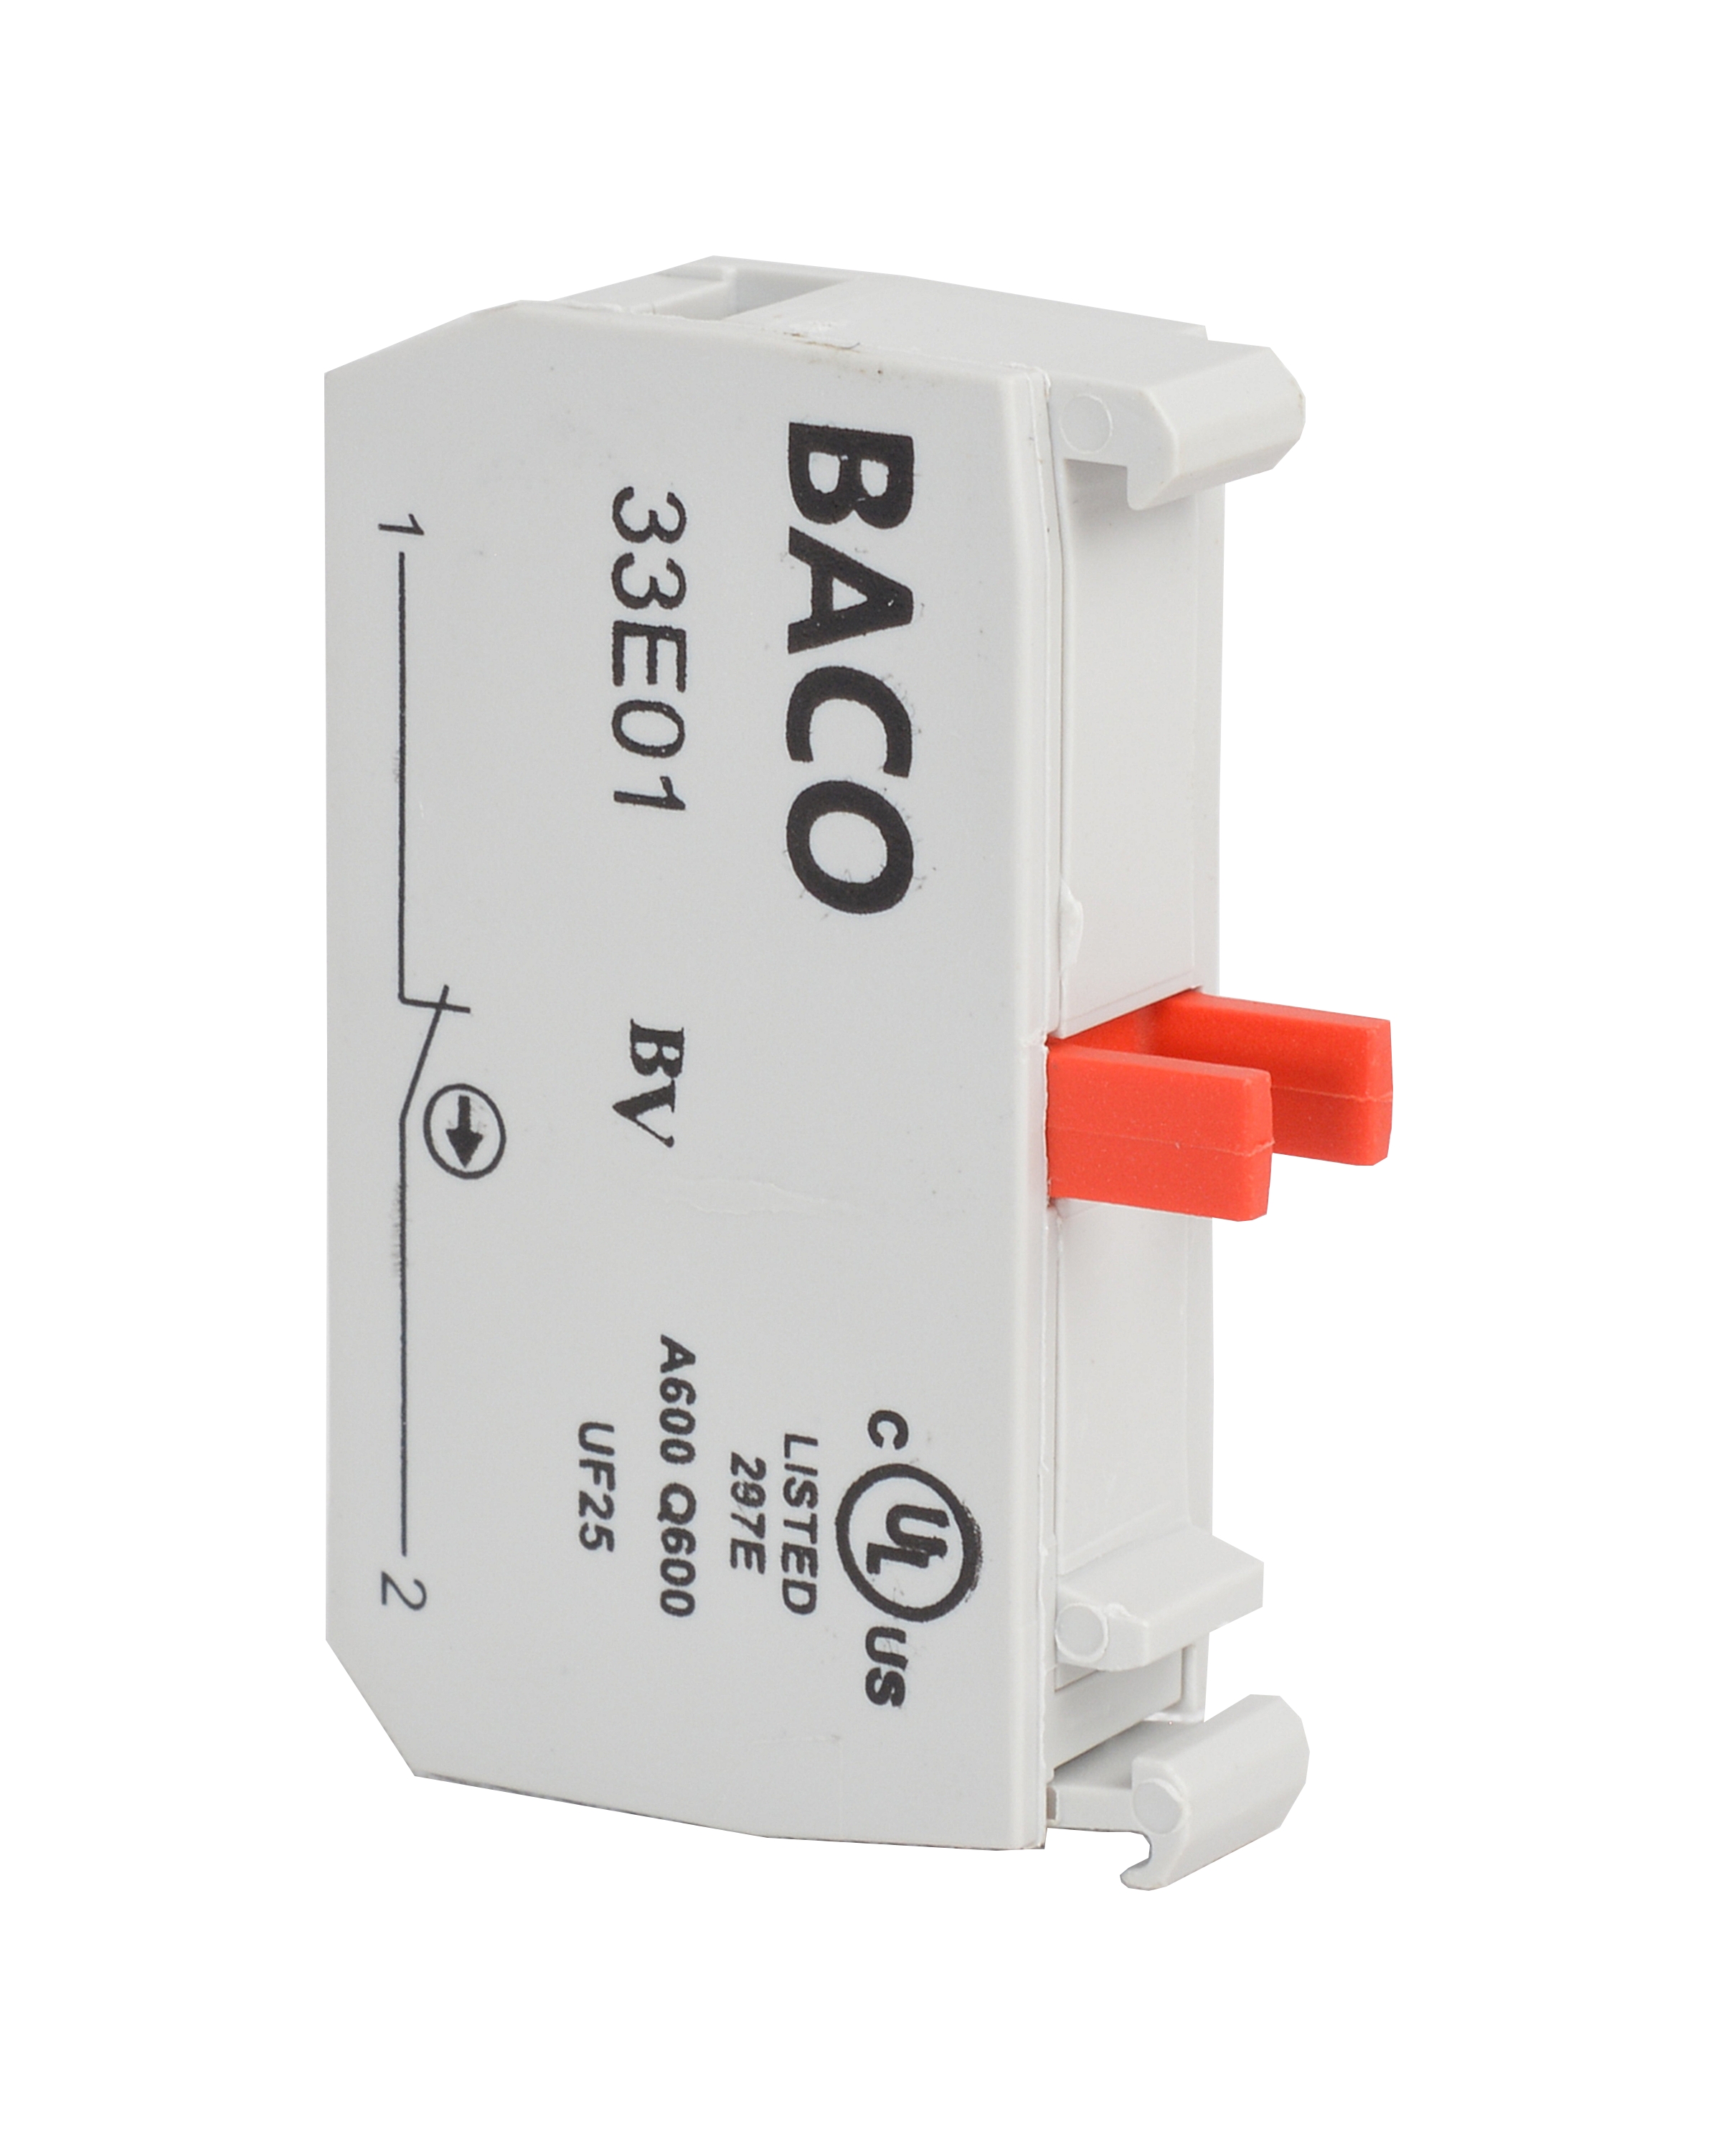 33E01 by Baco Controls, Inc.